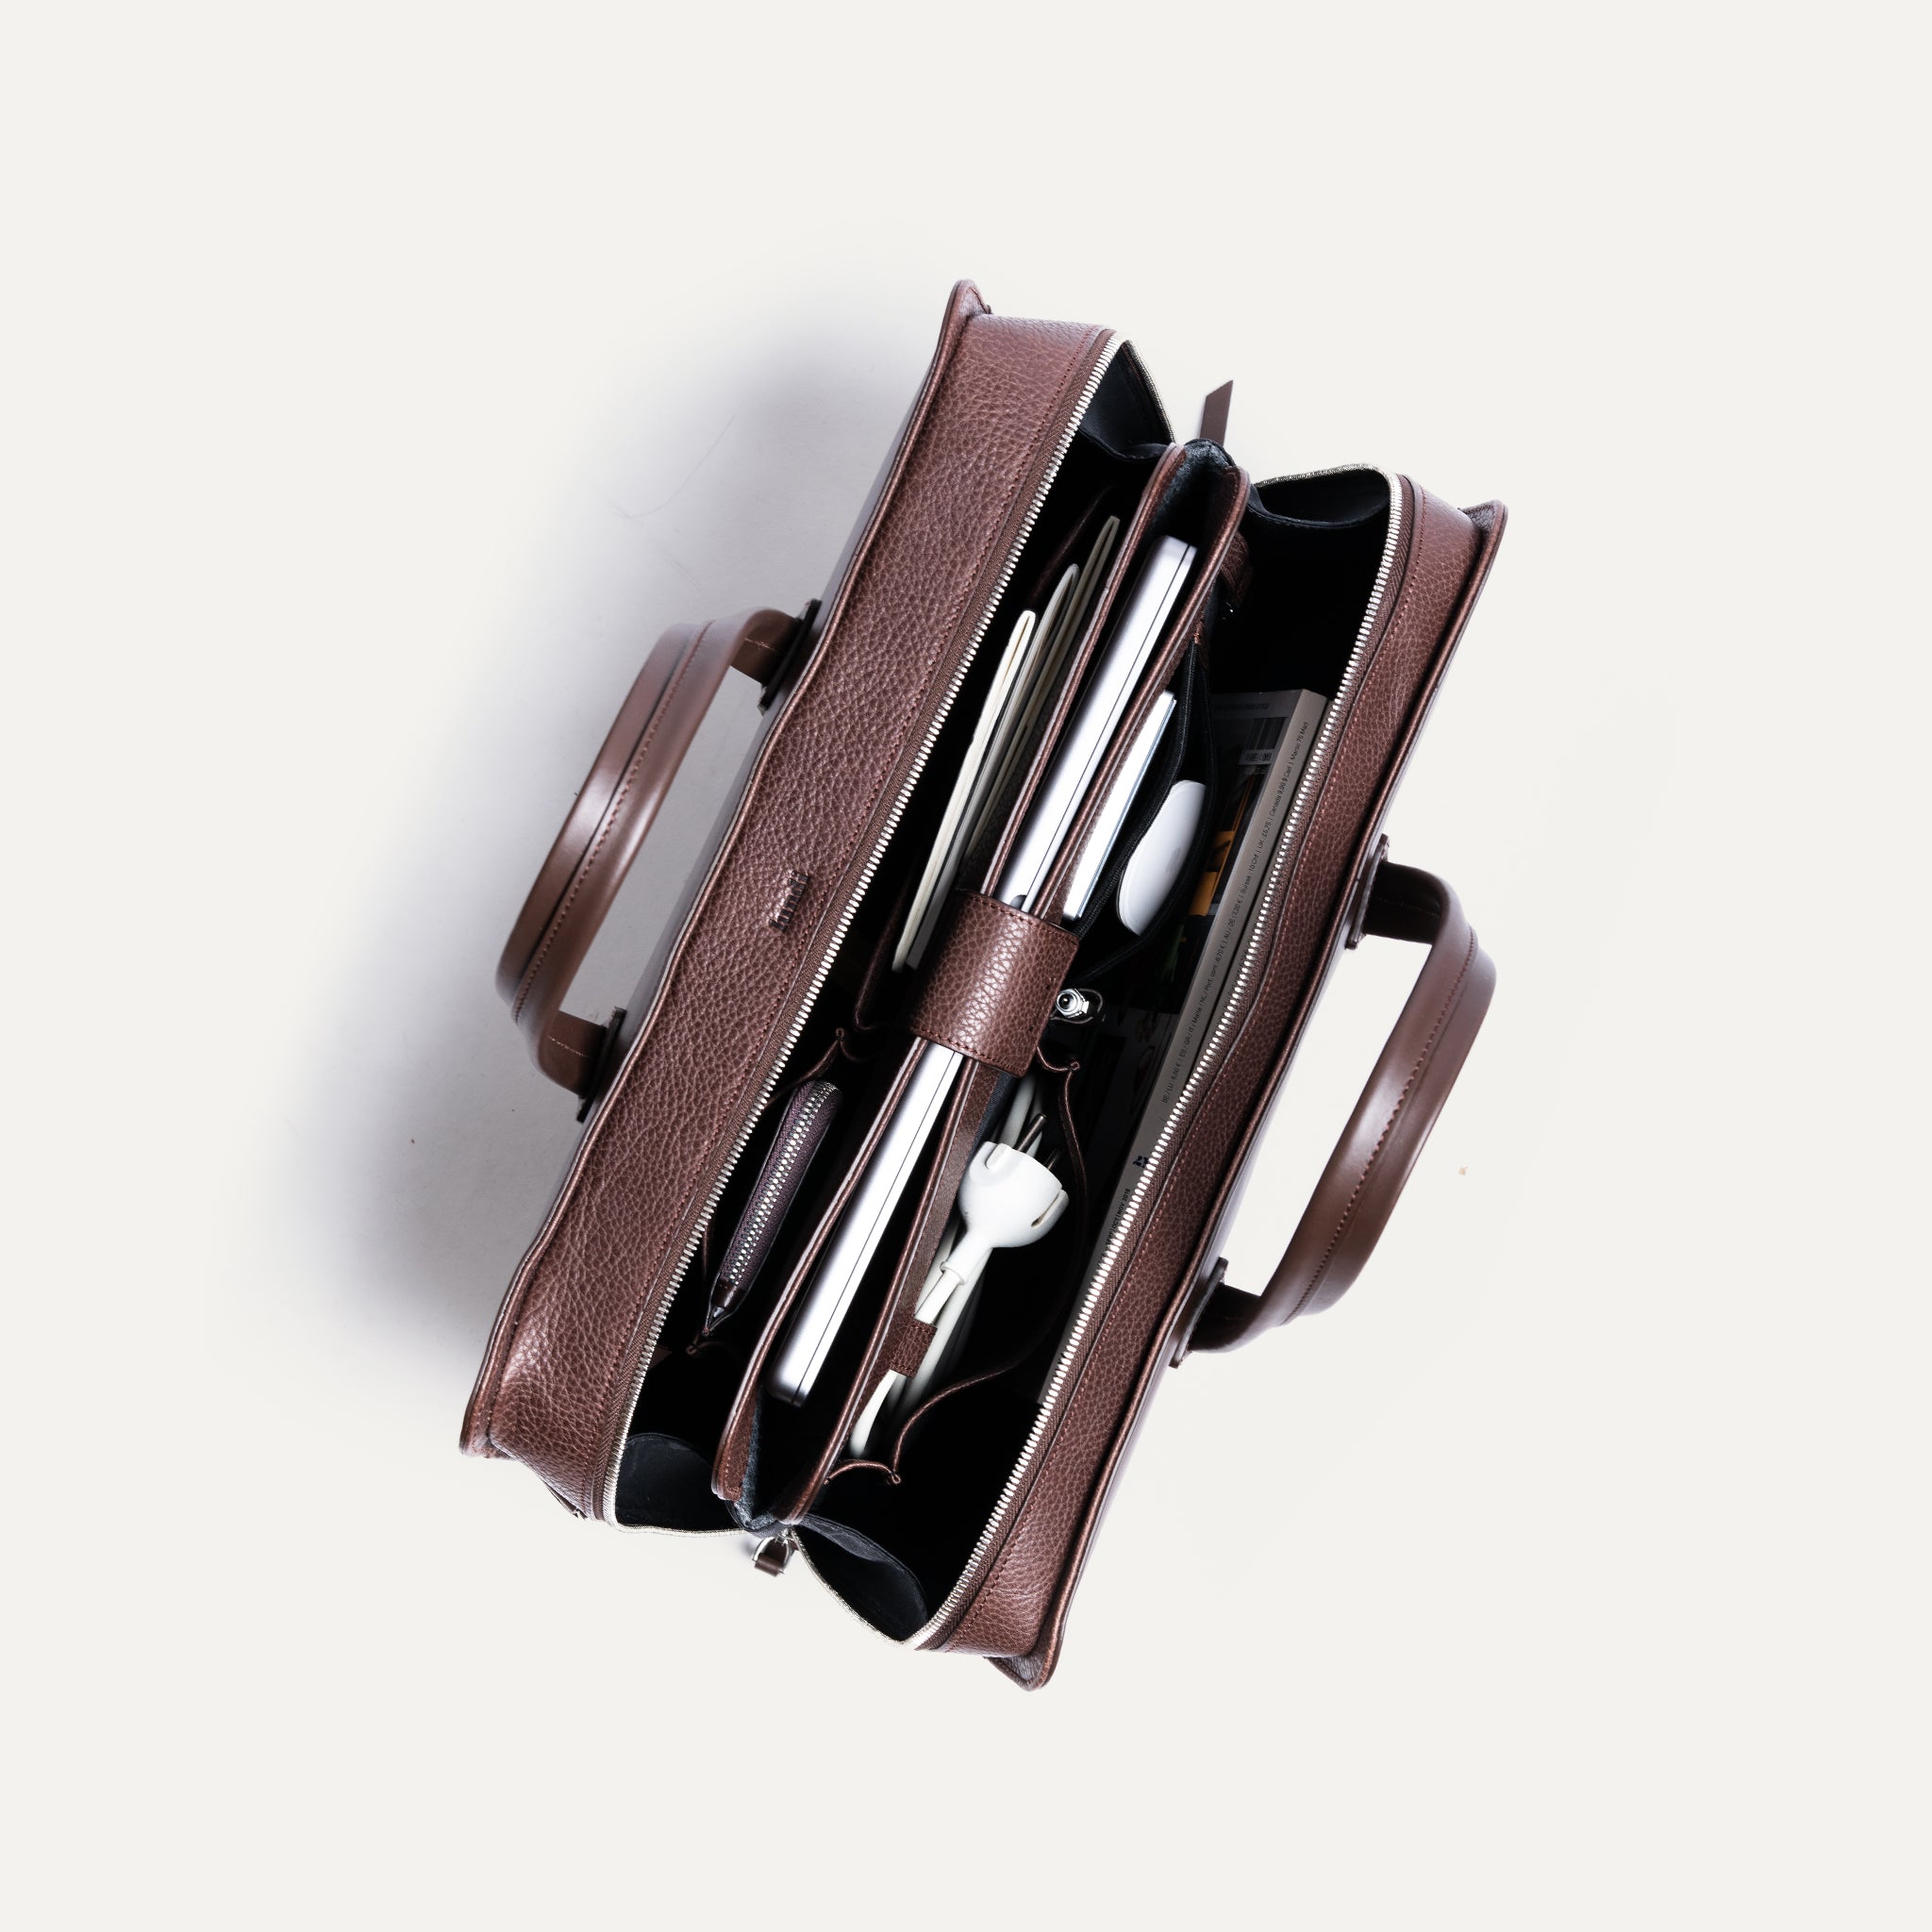 lundi Leather Briefcase | VICTOR Chestnut